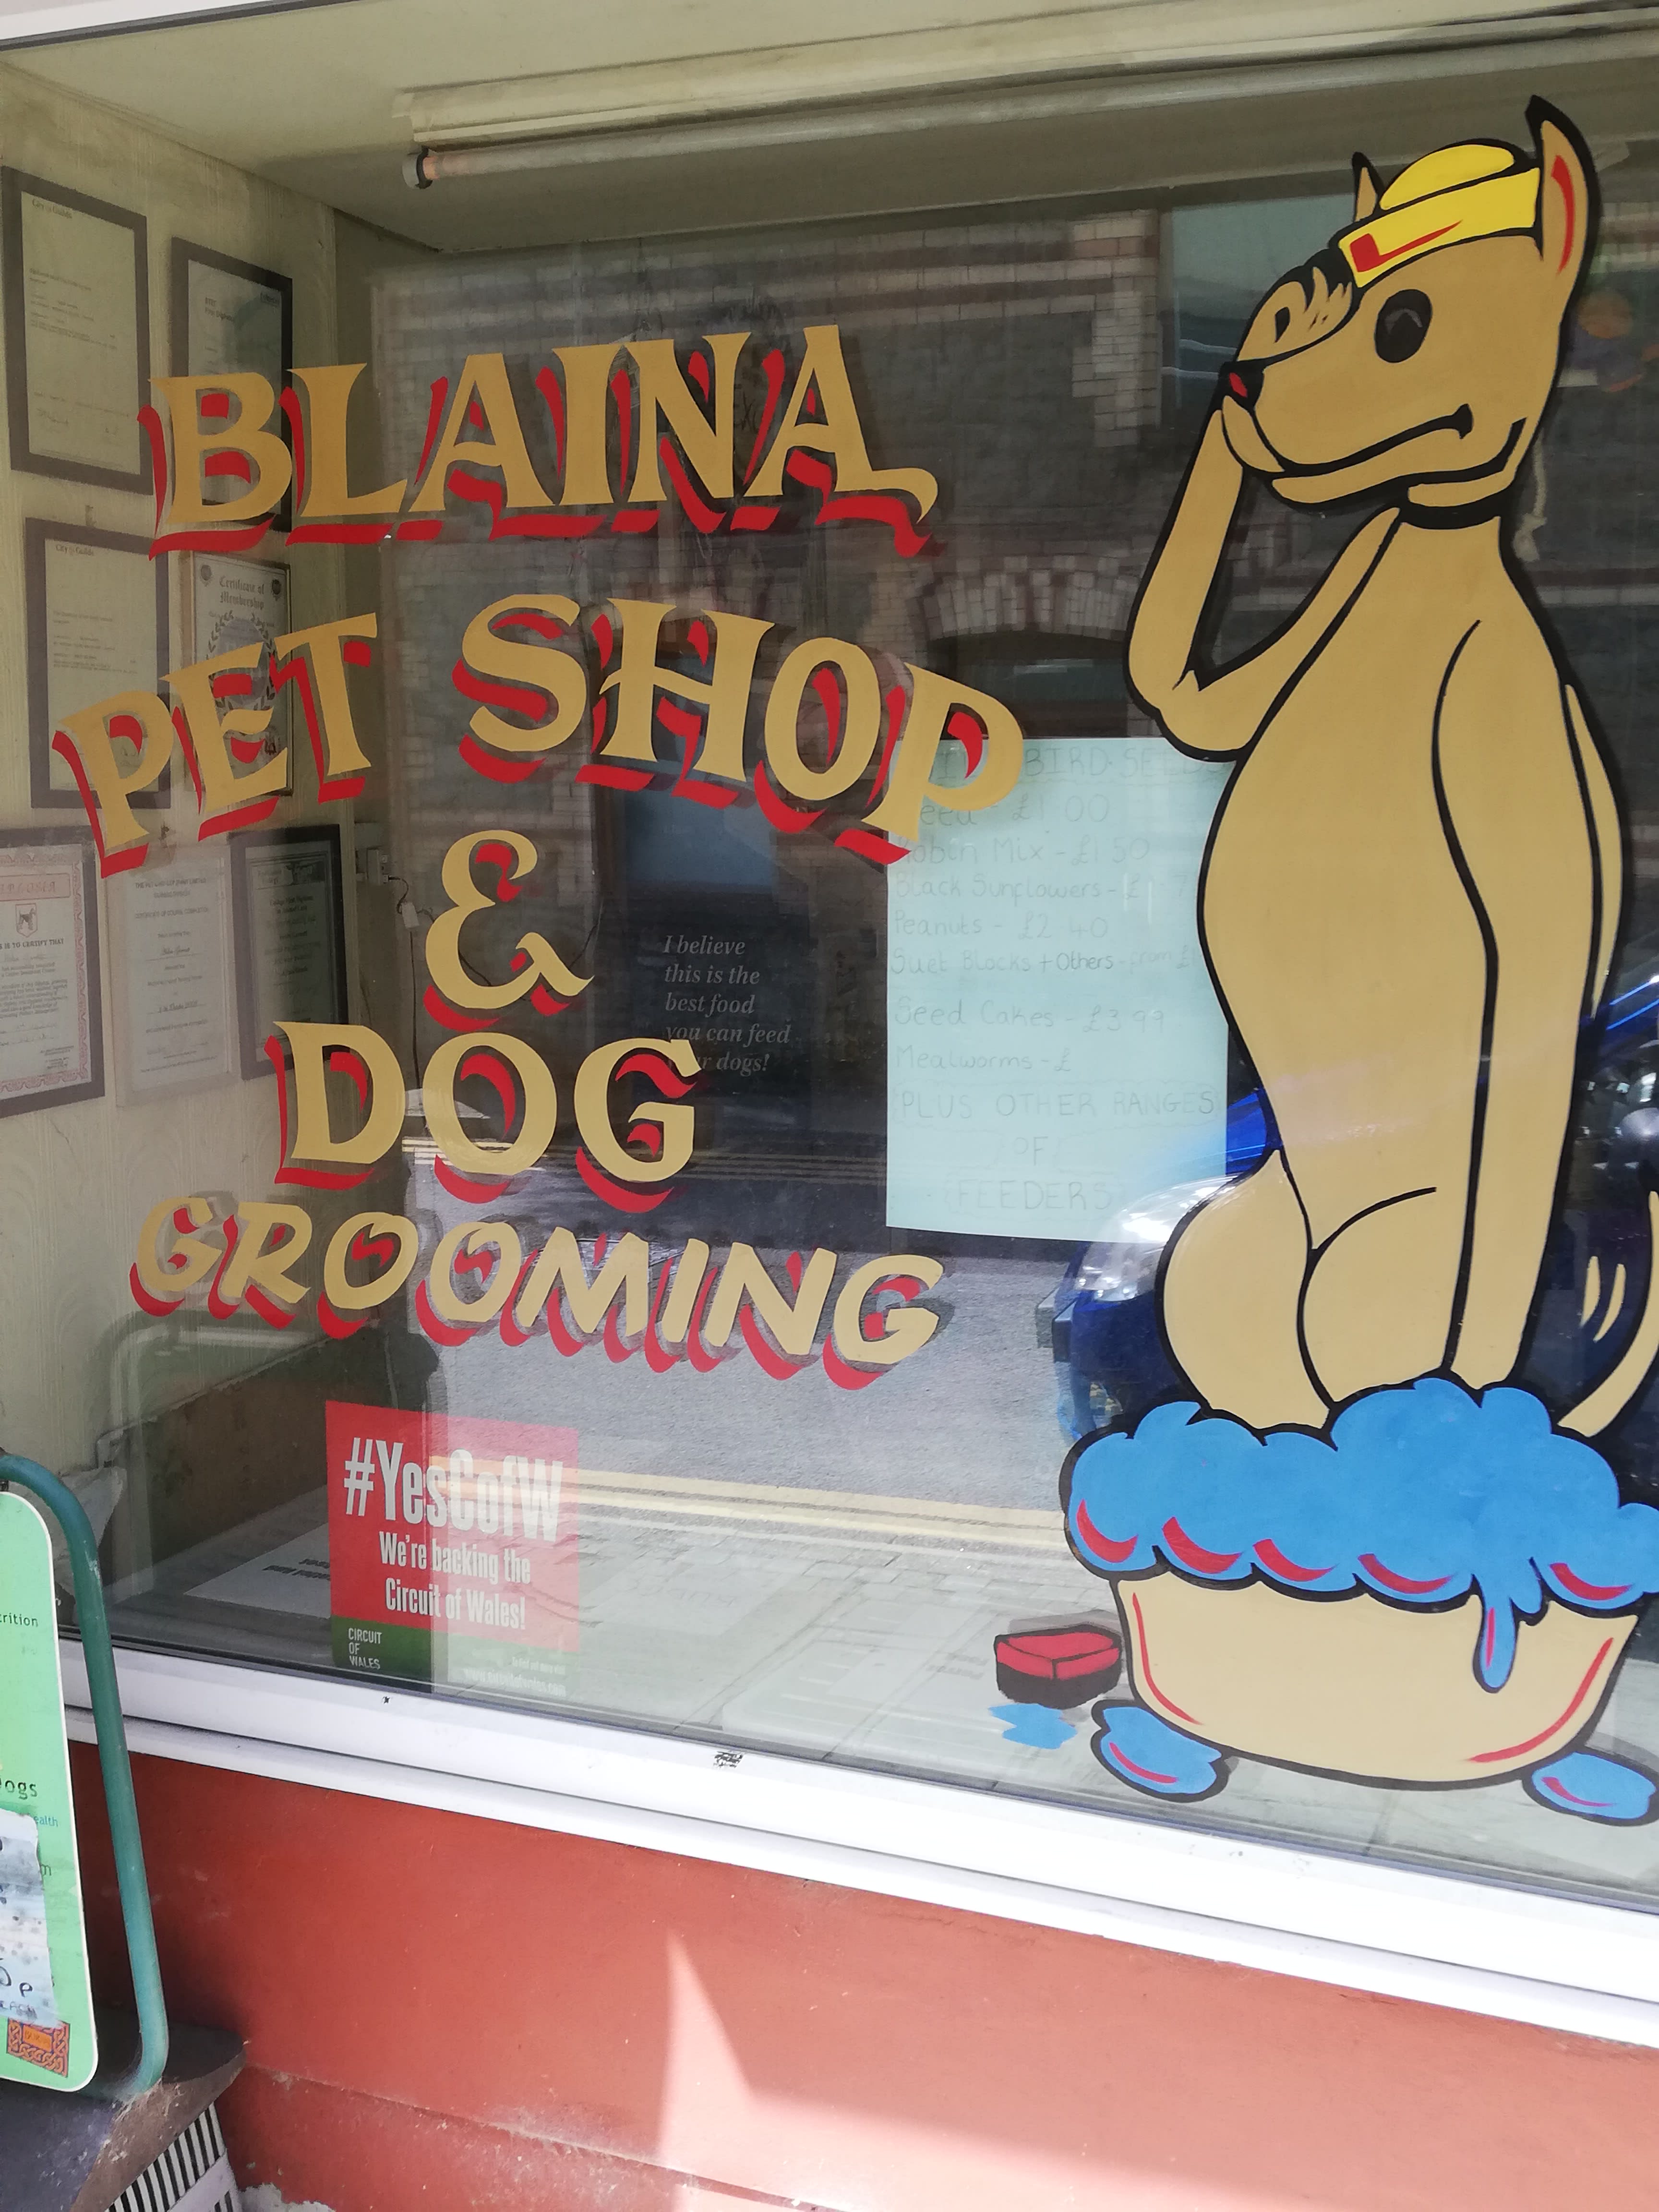 Blaina Pet Shop & Dog Grooming